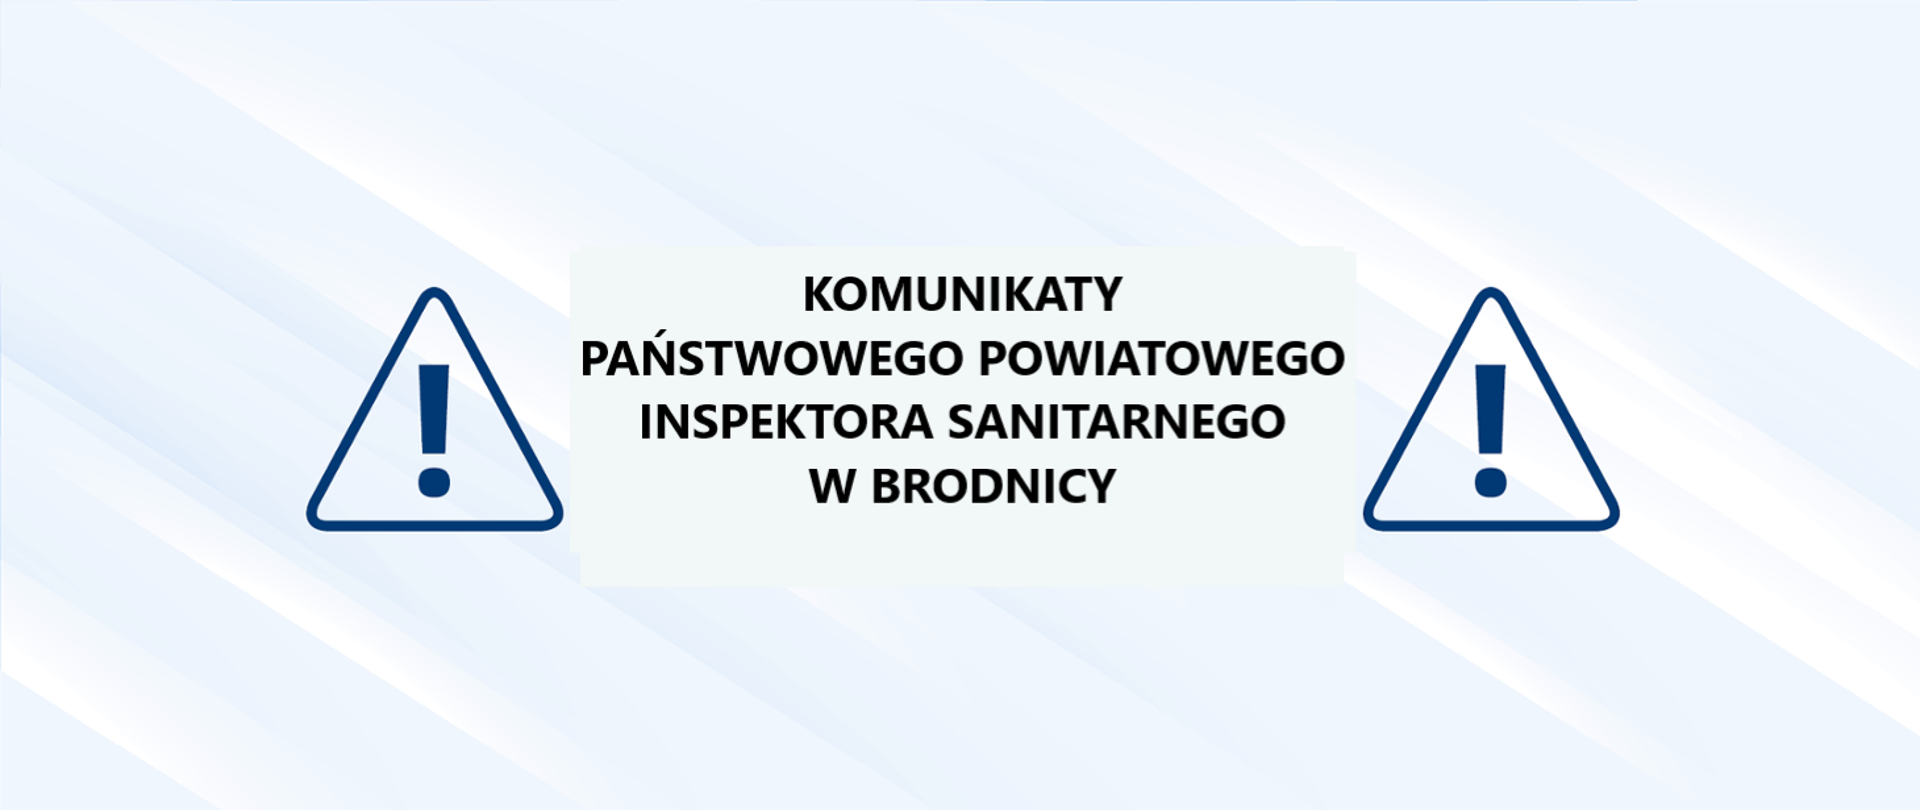 Komunikaty Państwowego Powiatowego Inspektora Sanitarnego w Brodnicy